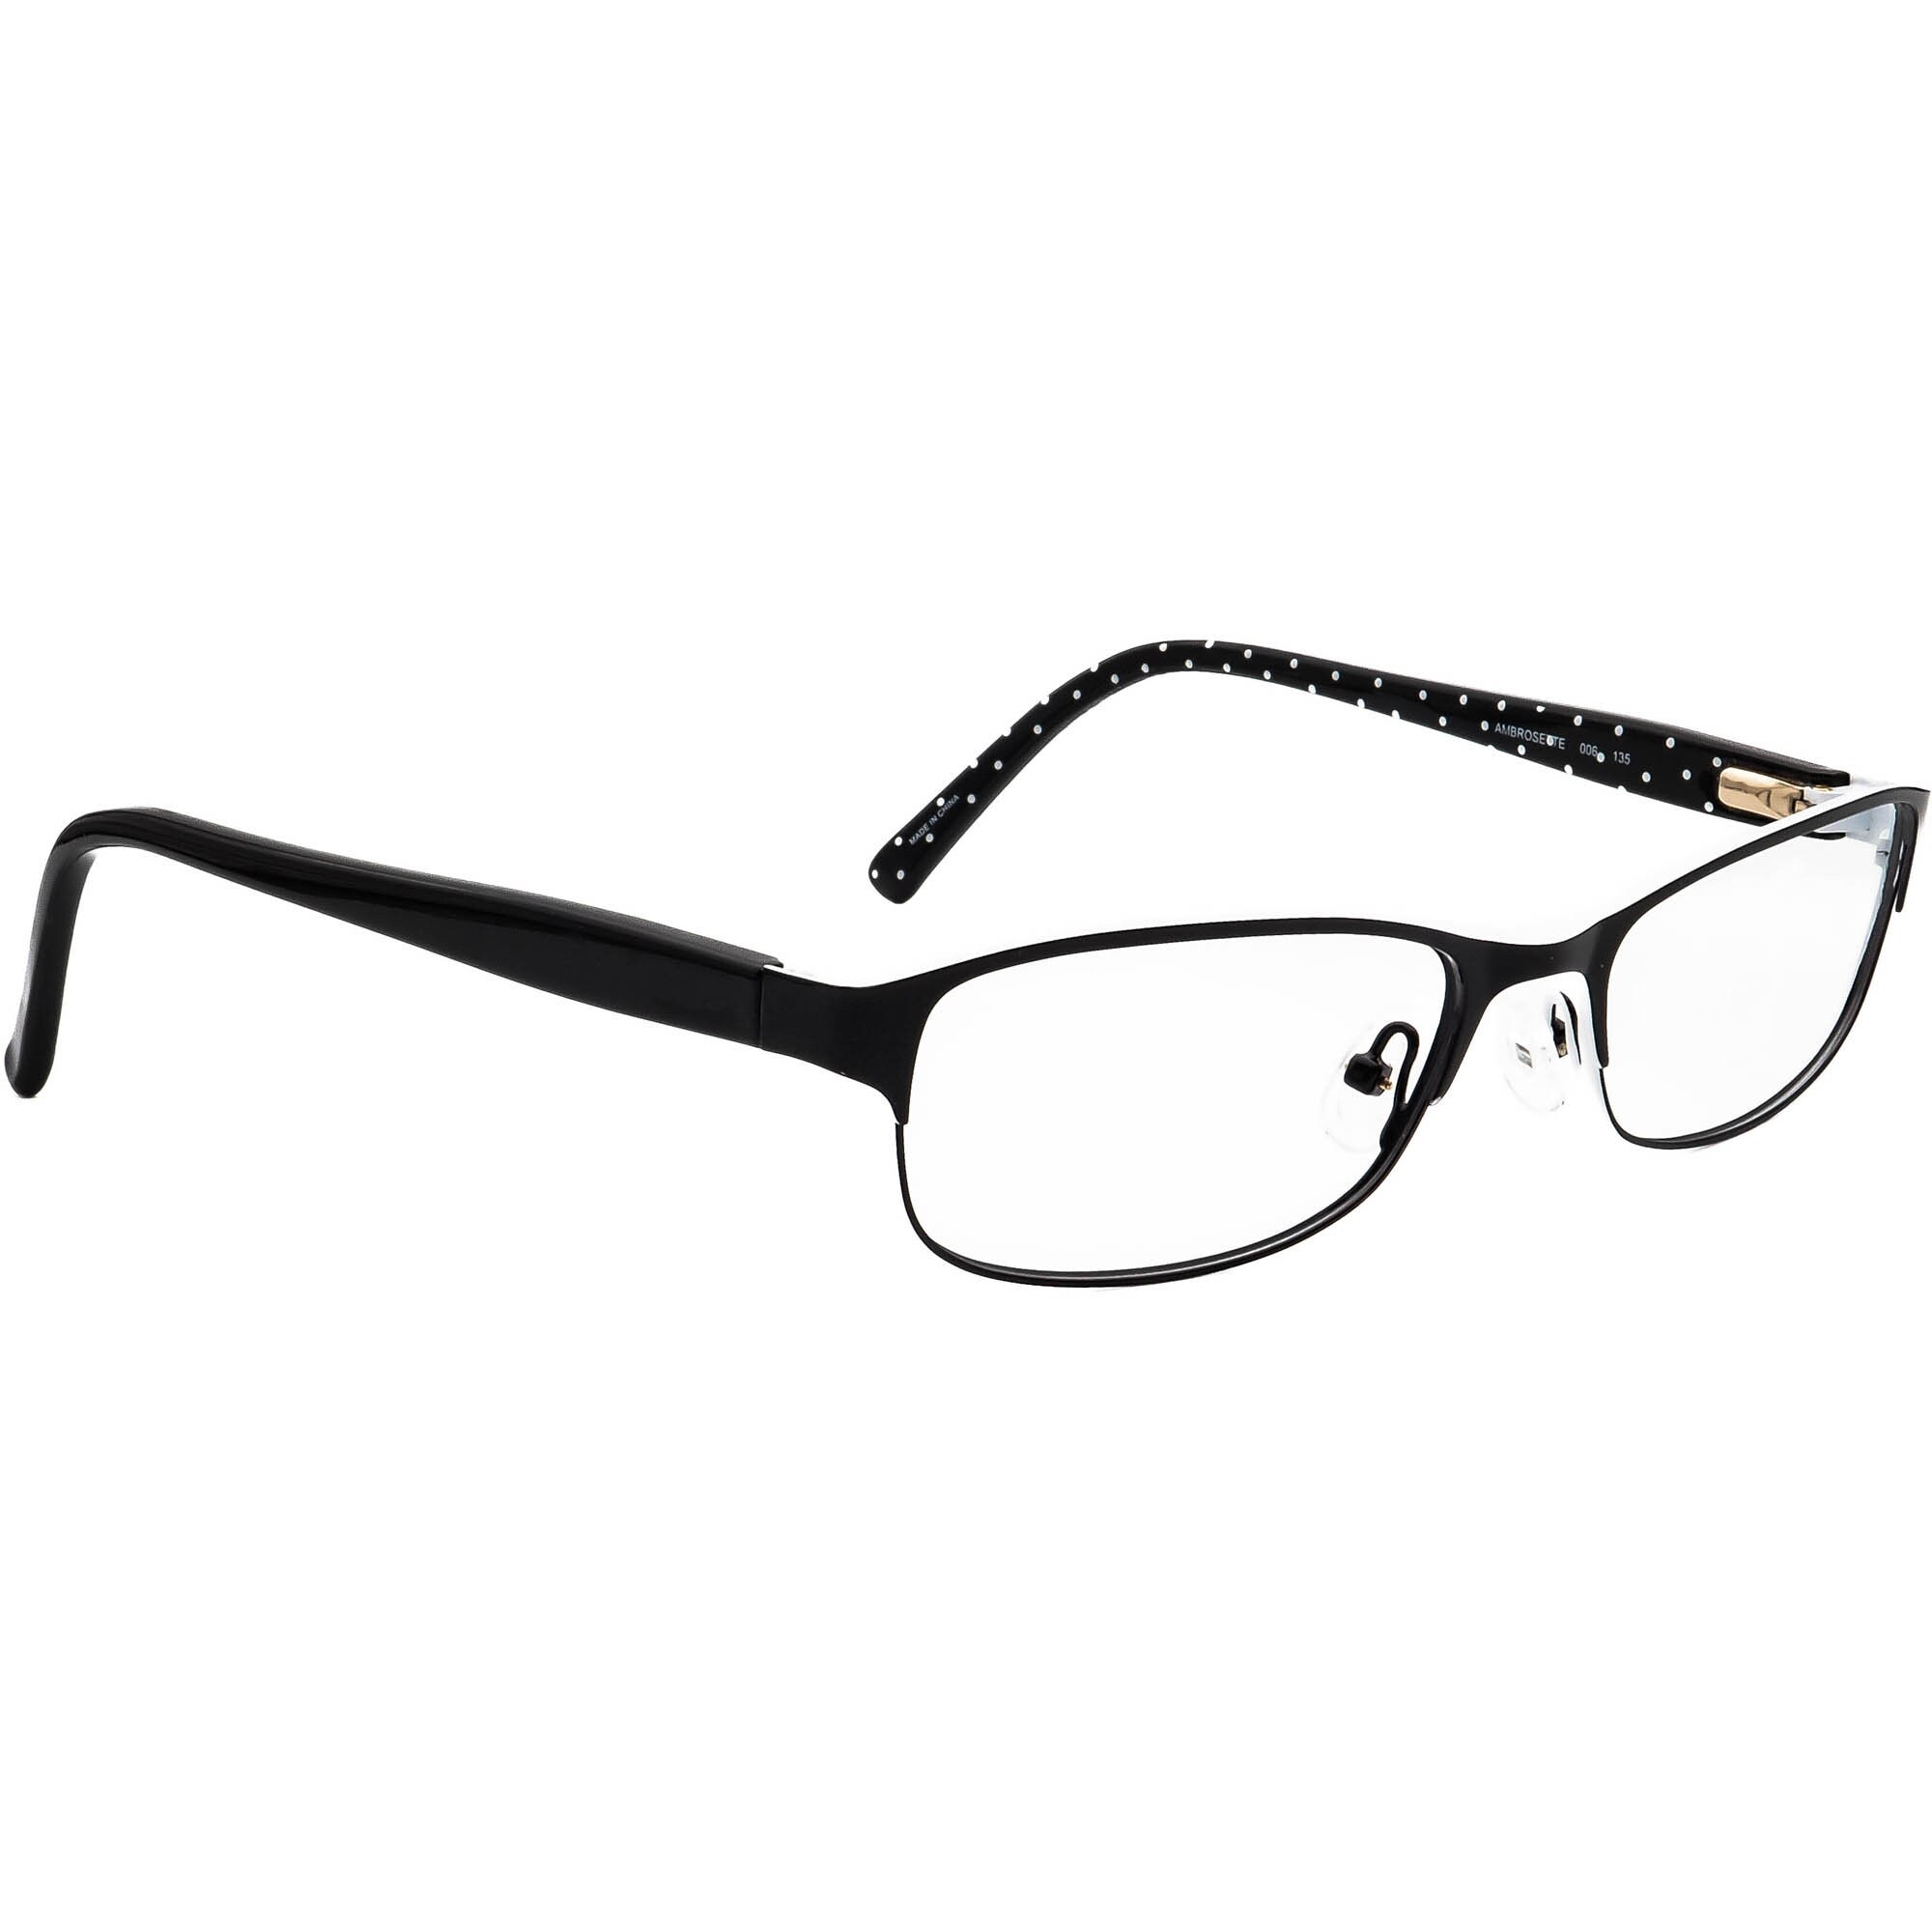 Kate Spade Eyeglasses Ambrosette 006 Black&white Rectangular - Etsy